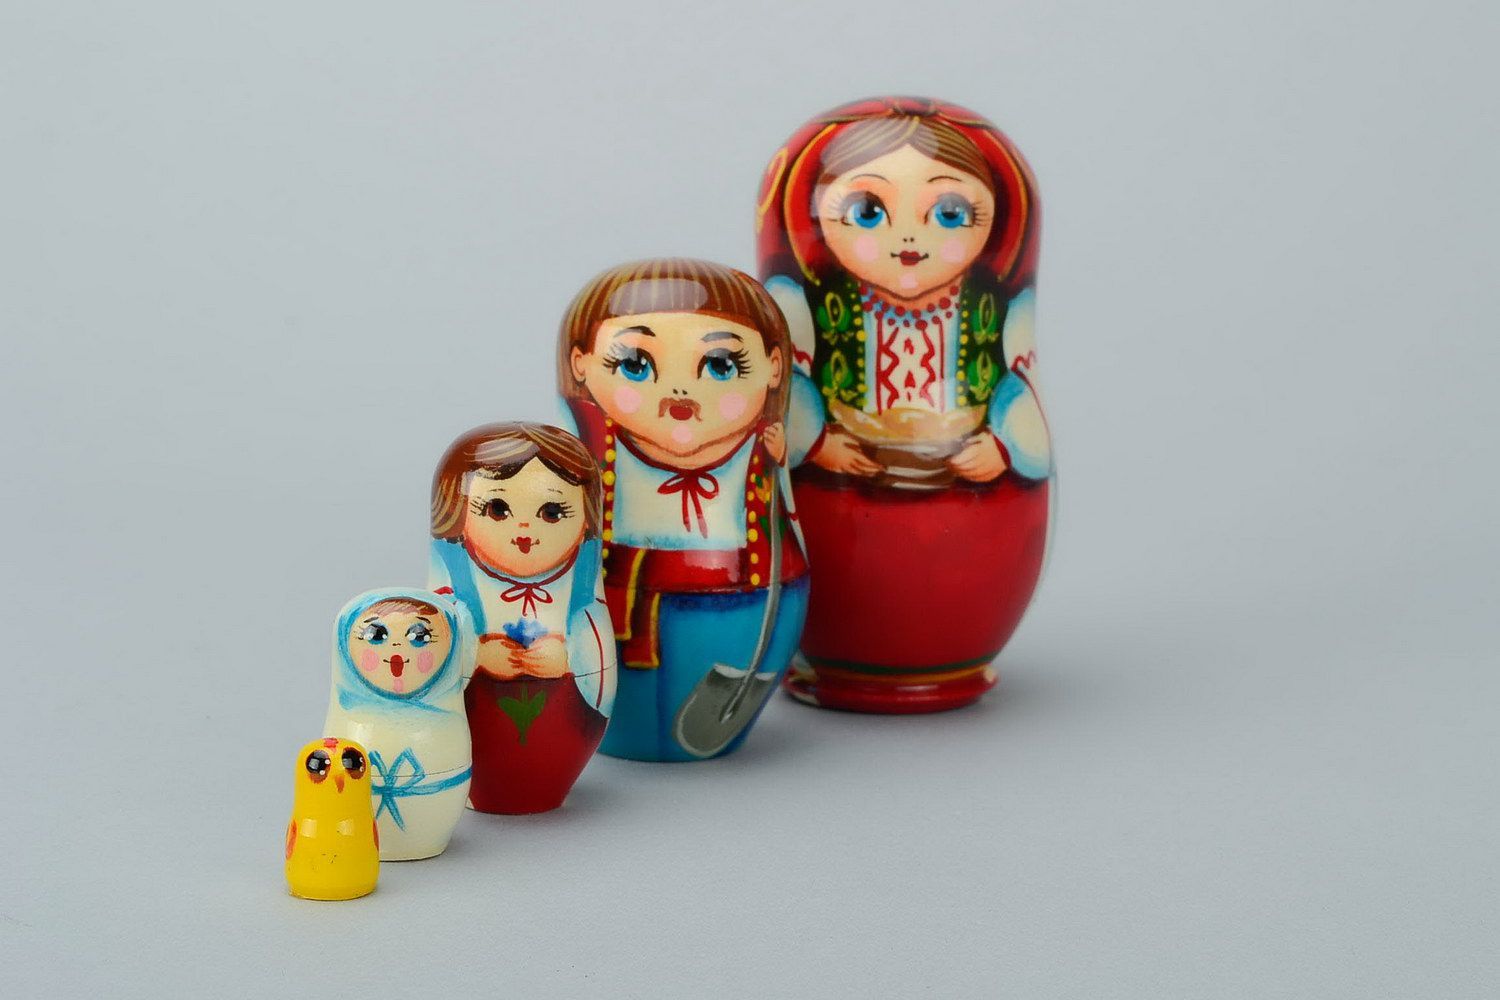 Matrioshka en una ropa nacional ucraniana con varéniki. Matrioshka es la muñeca de madera con vestido ruso campesino, que contiene otras de menor tamaño. Varéniki es una comida nacional de Ucrania
 foto 5